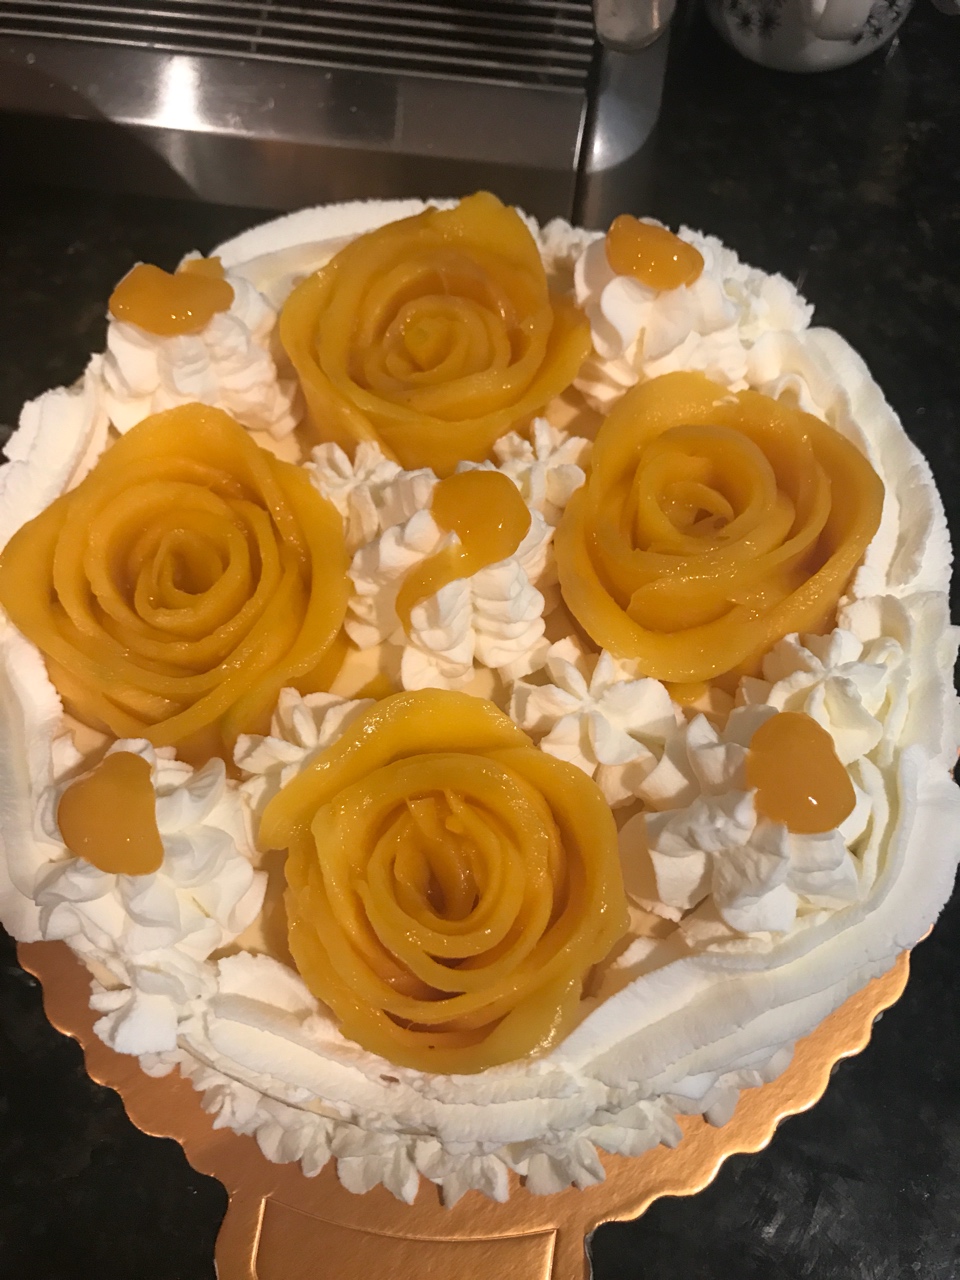 酸奶芒果慕斯蛋糕